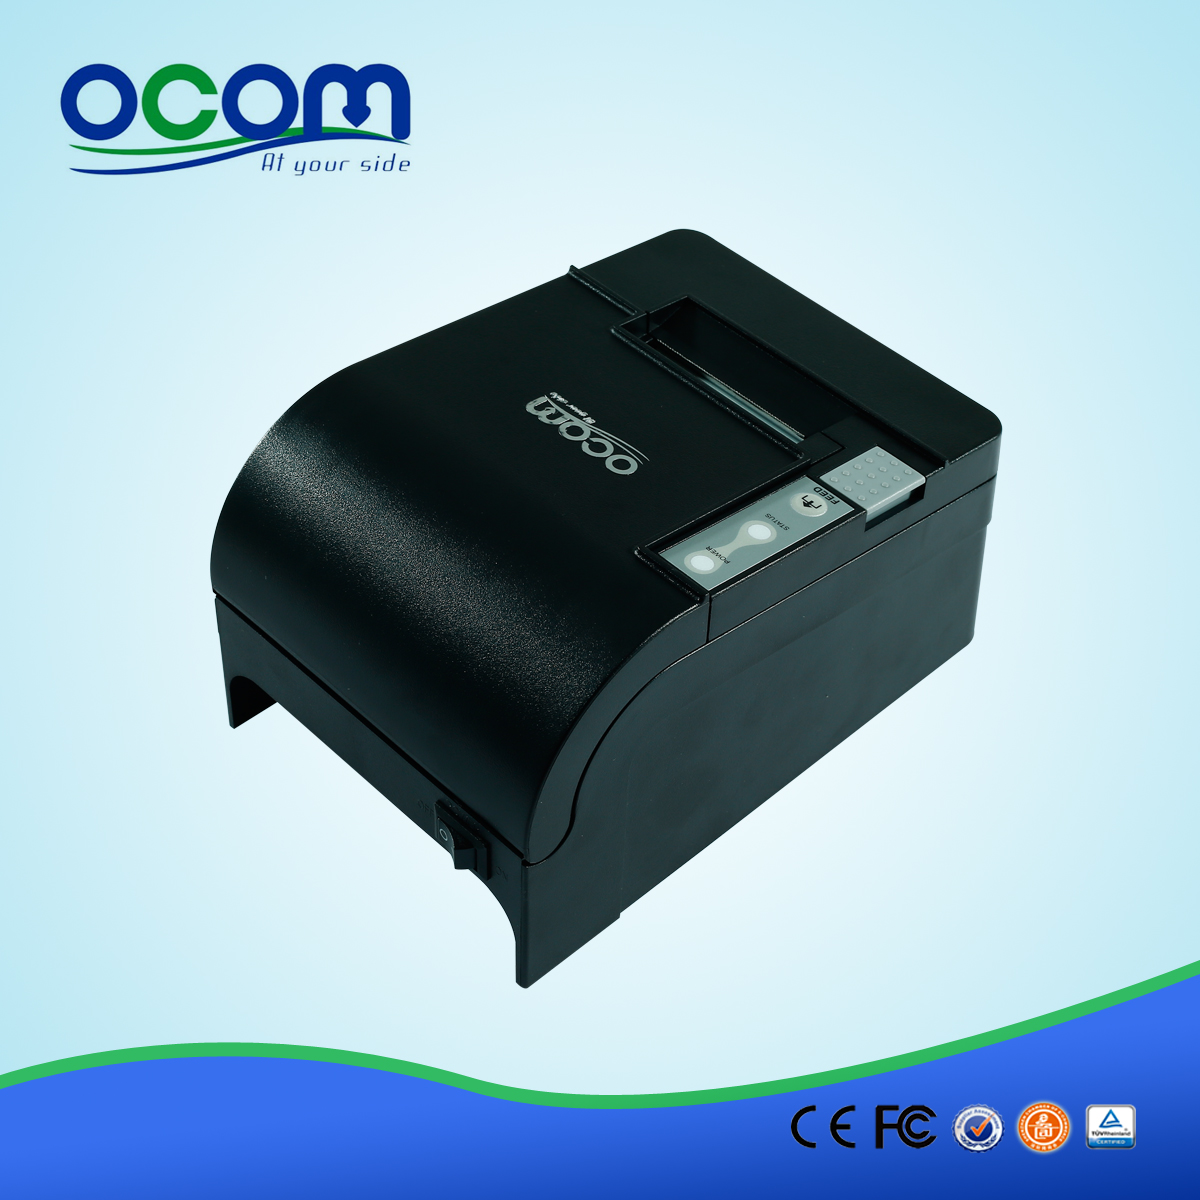 OCPP-58C-58 millimetri-ristorante-bolletta-termico-stampante